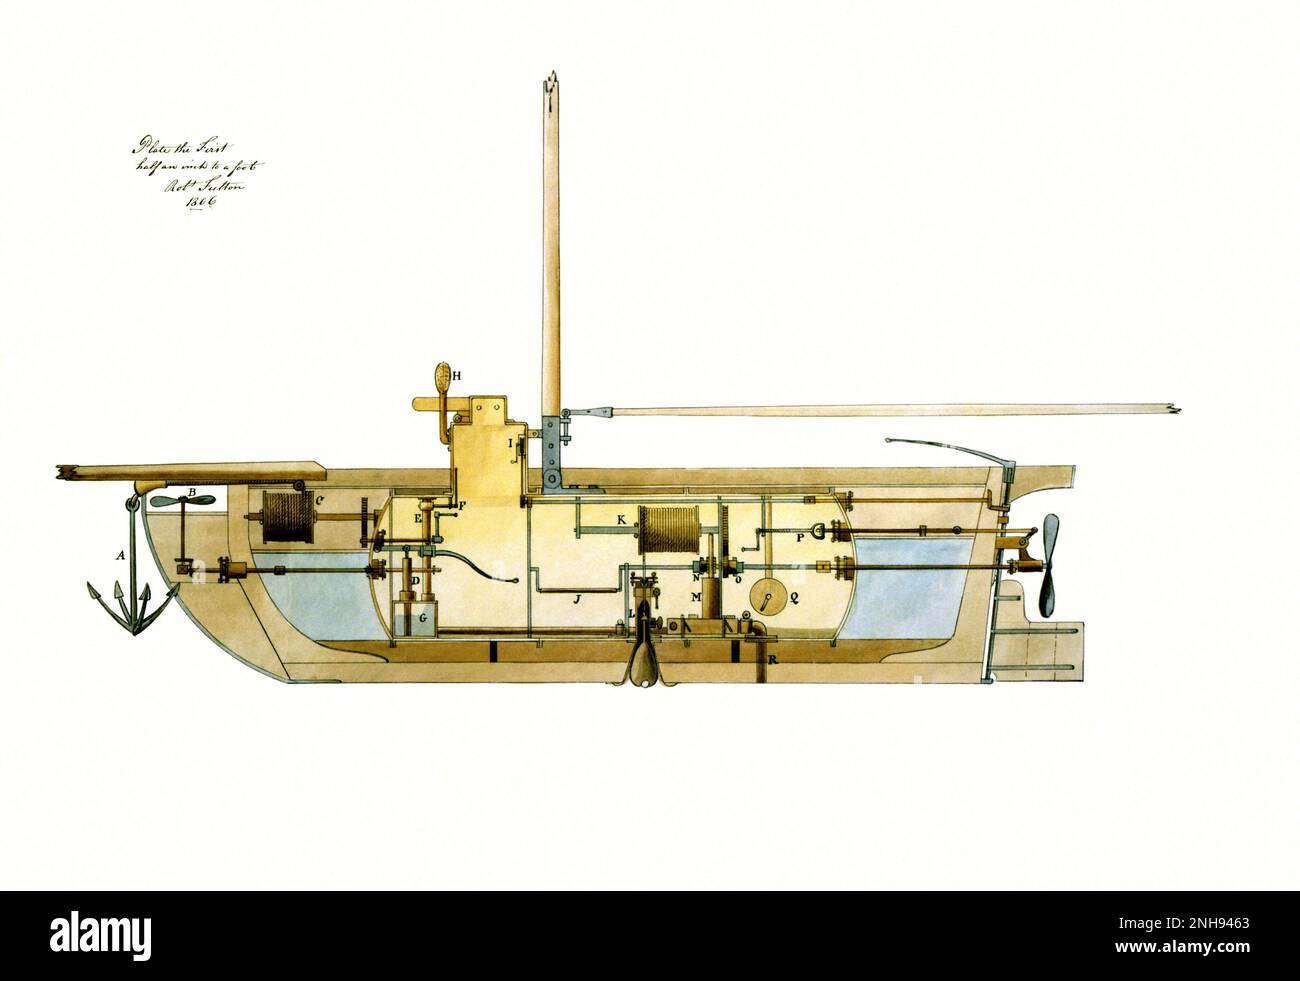 Nave sottomarina, bombe sottomarine e modalità di attacco per il governo degli Stati Uniti da Robert Fulton, 1806. Nave sottomarina, sezione longitudinale. Robert Fulton (1765 – 1815) è stato un ingegnere e inventore statunitense. Mentre viveva in Francia, Fulton progettò il primo sottomarino funzionante a propulsione muscolare, Nautilus, tra il 1793 e il 97. Il 3 luglio 1801, a le Havre, Fulton portò il Nautilus alla profondità allora notevole di 25 piedi. Foto Stock